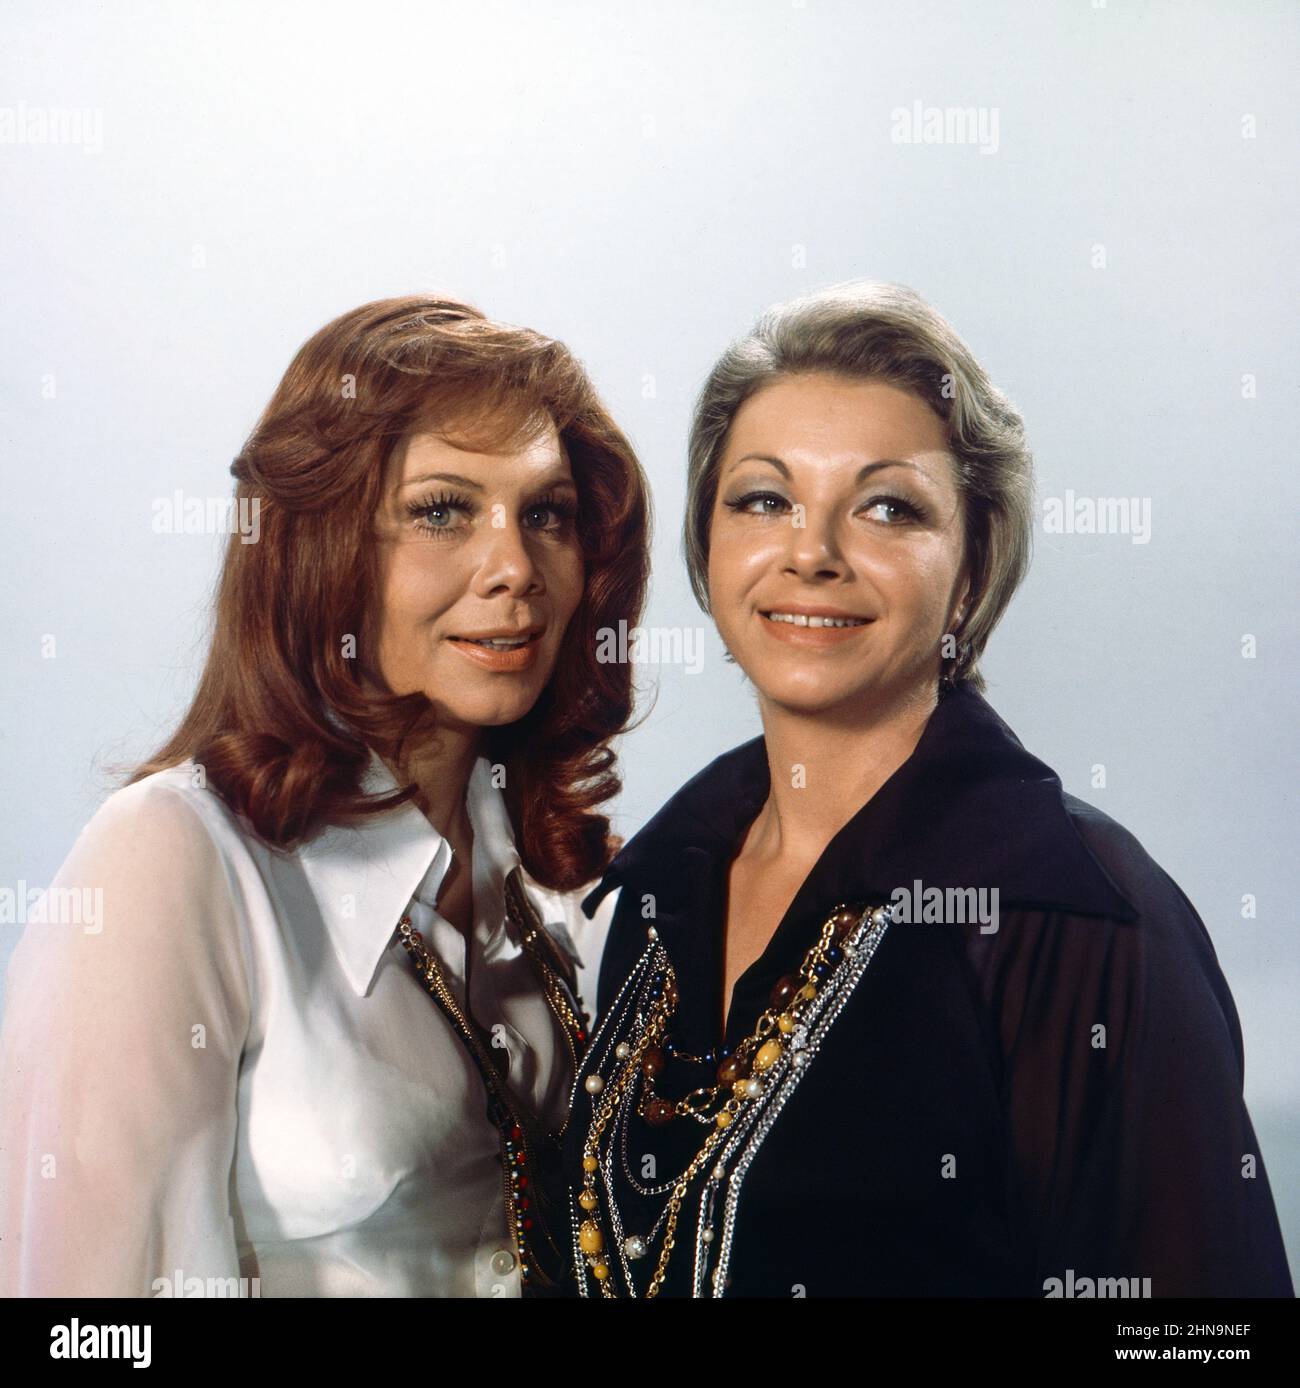 Honey Twins, österreichisches Gesangsduo des deutschen Schlagers der Nachkriegszeit, bestehend aus Andrea Horn alias Hedi Prien und Beatrix Trixie Kühn, Deutschland um 1974. Stock Photo